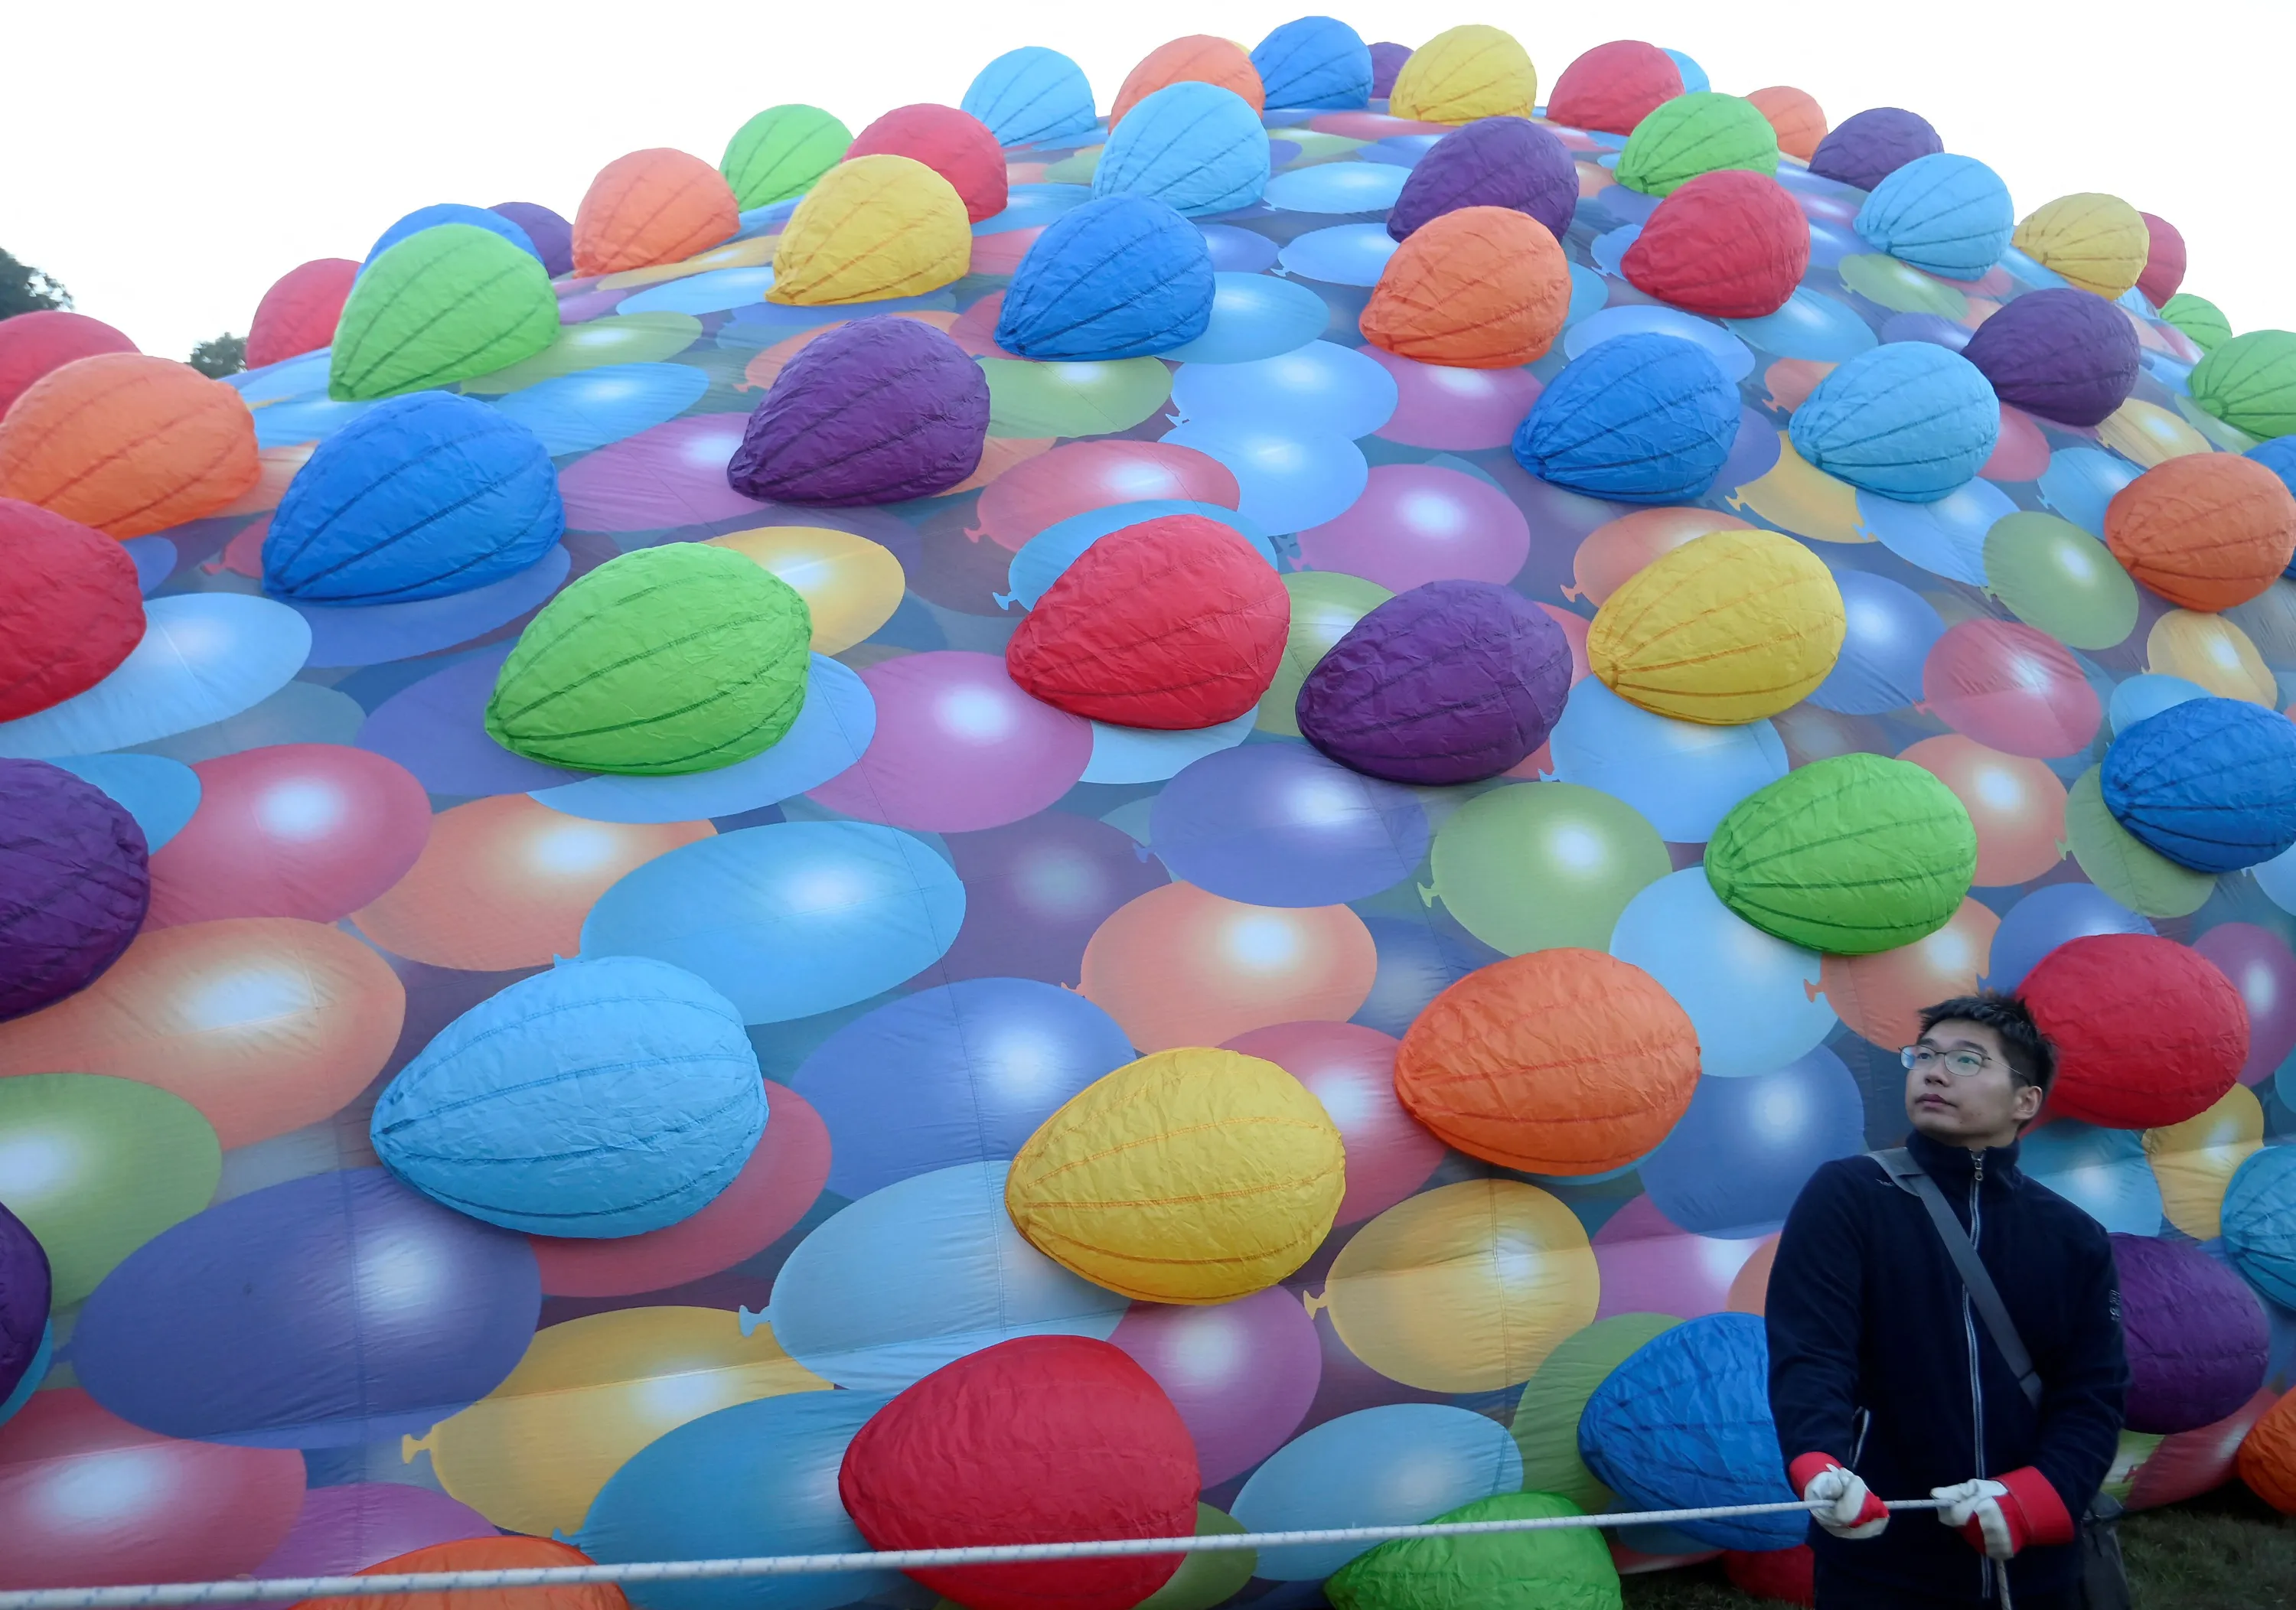 На шаре караоке. Самый большой воздушный шар в мире. Самый большой воздушный шарик в мире. Воздухоплавательный шар в интерьере. Много воздушных шариков фото.